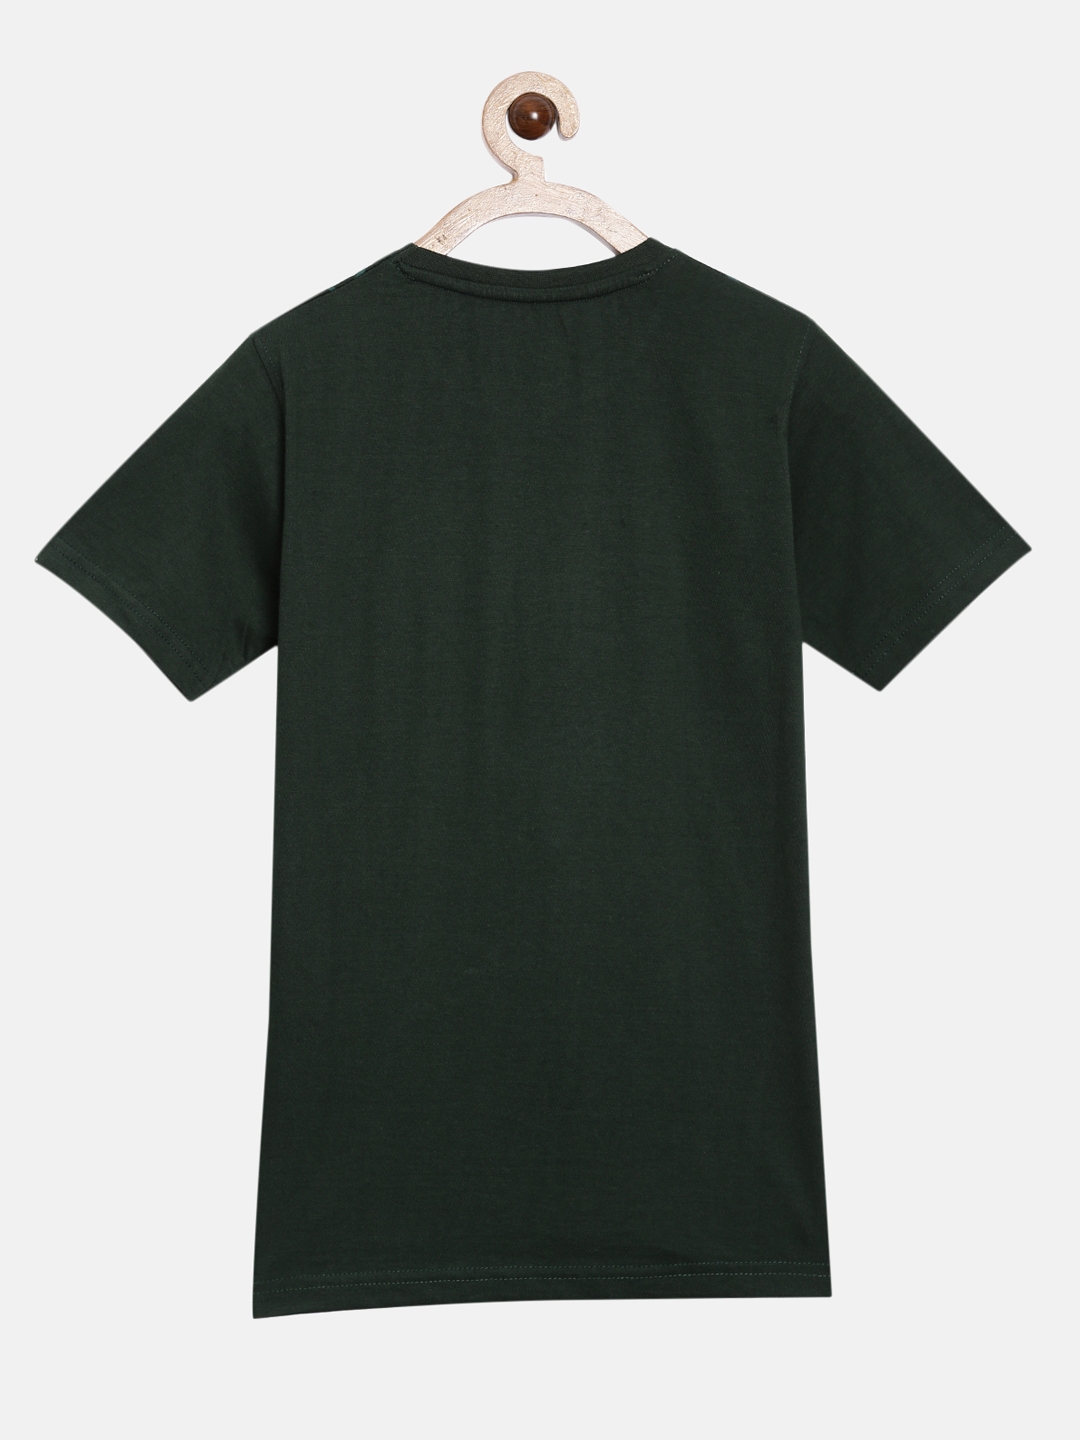 Peejas Kids Boys 100% Cotton Printed Casual Tshirt